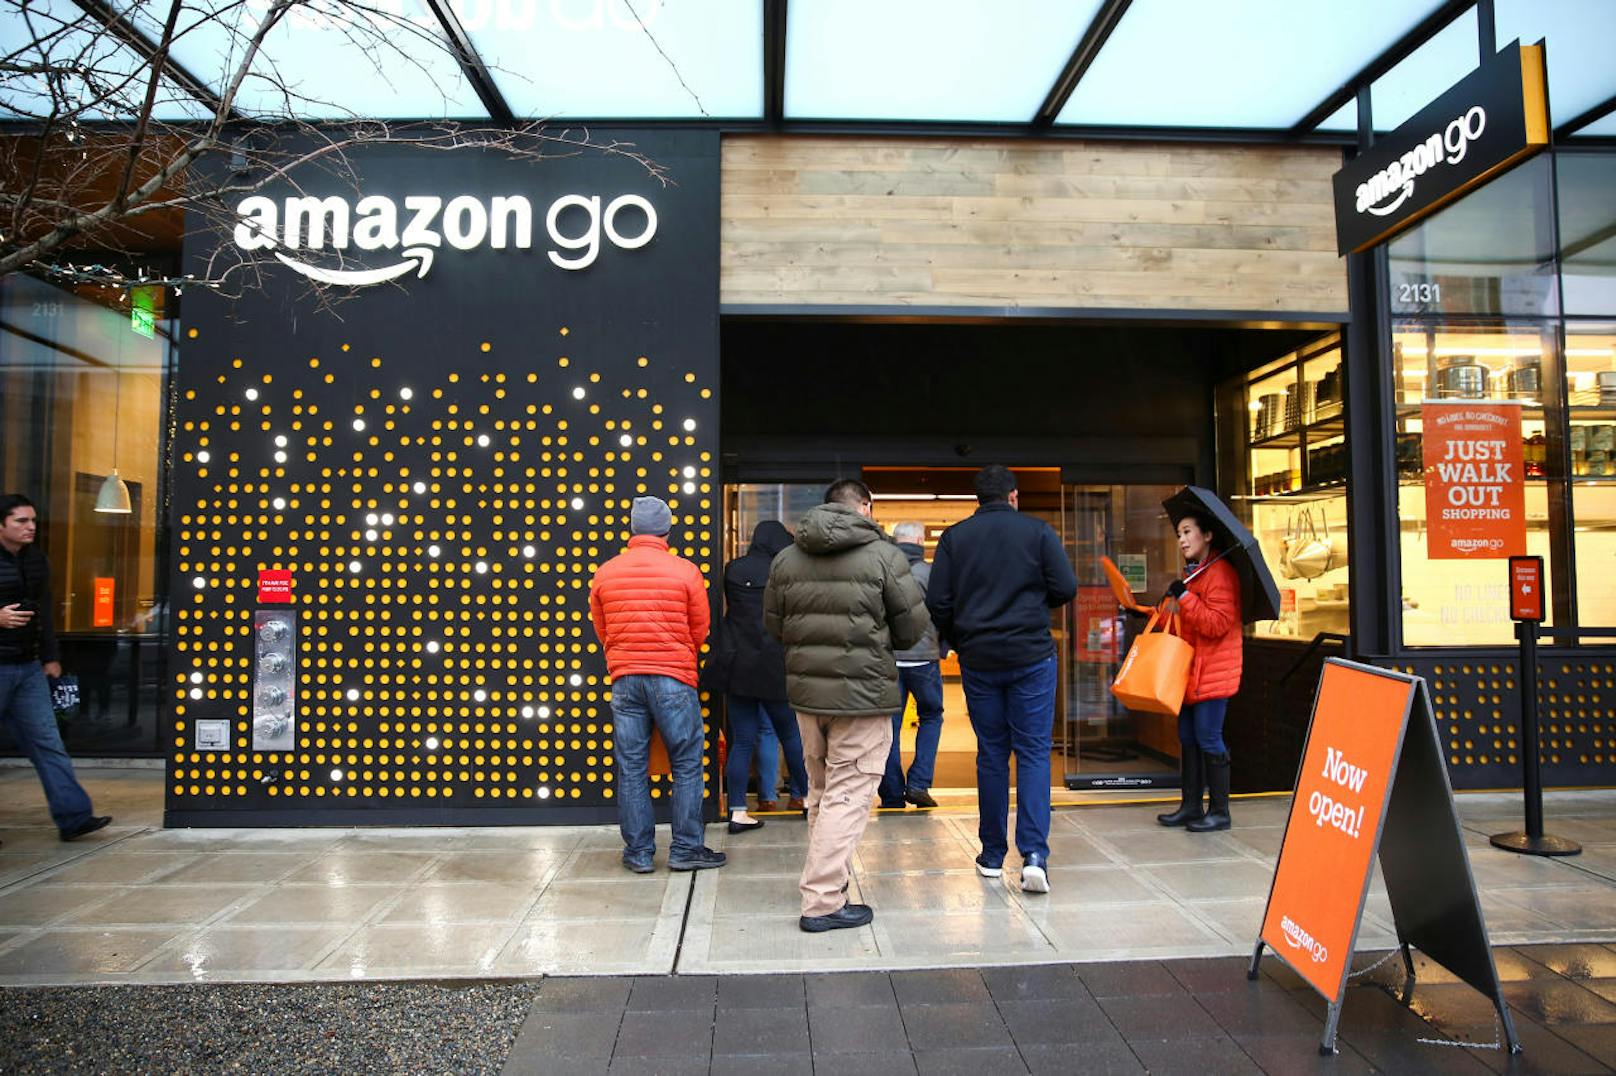 <b>19. September 2018:</b> Online-Gigant Amazon will offenbar bis 2021 den Einzelhandel massiv ausbauen. Rund 3.000 Amazon Go geschäfte ohne Kassierer sollen vor allem in den USA öffnen. Anfang 2018 hatte Amazon seinen ersten Go-Laden in Seattle eröffnet, weitere 50 seien laut "Bloomberg" derzeit in Planung. Von Amazon gab es keine Stellungnahme zu den Meldungen.